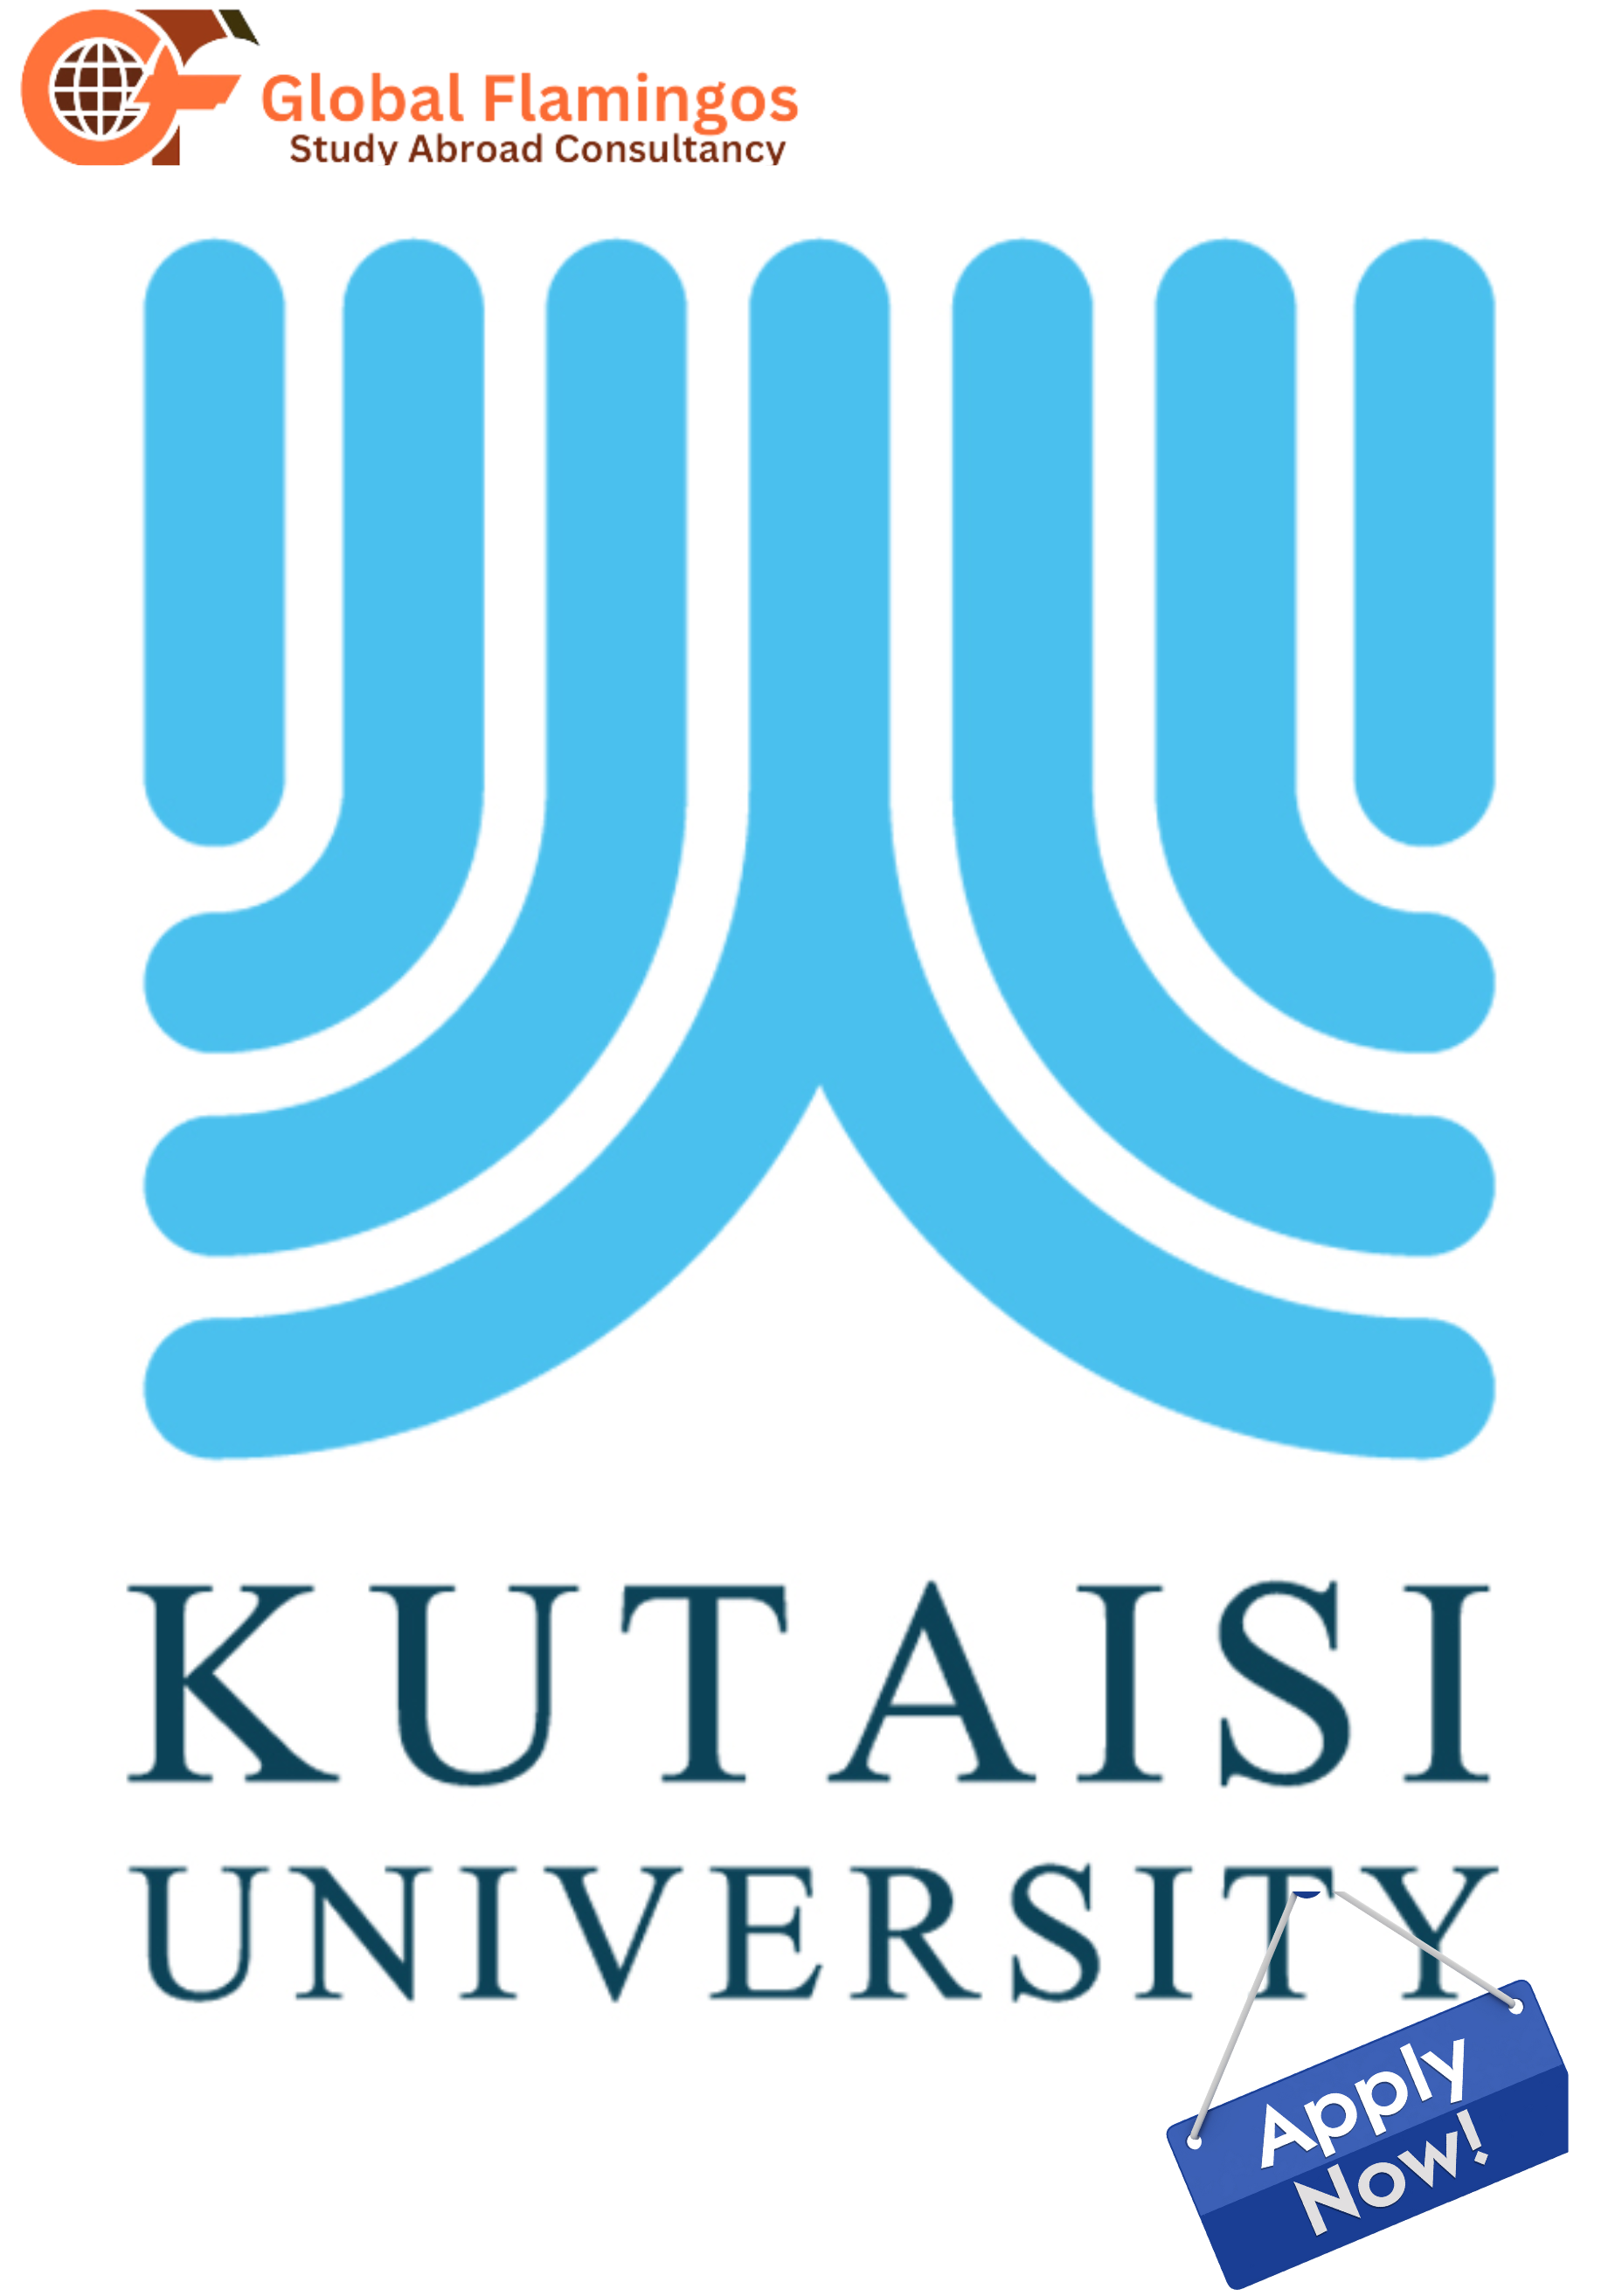 Kutaisi Institute